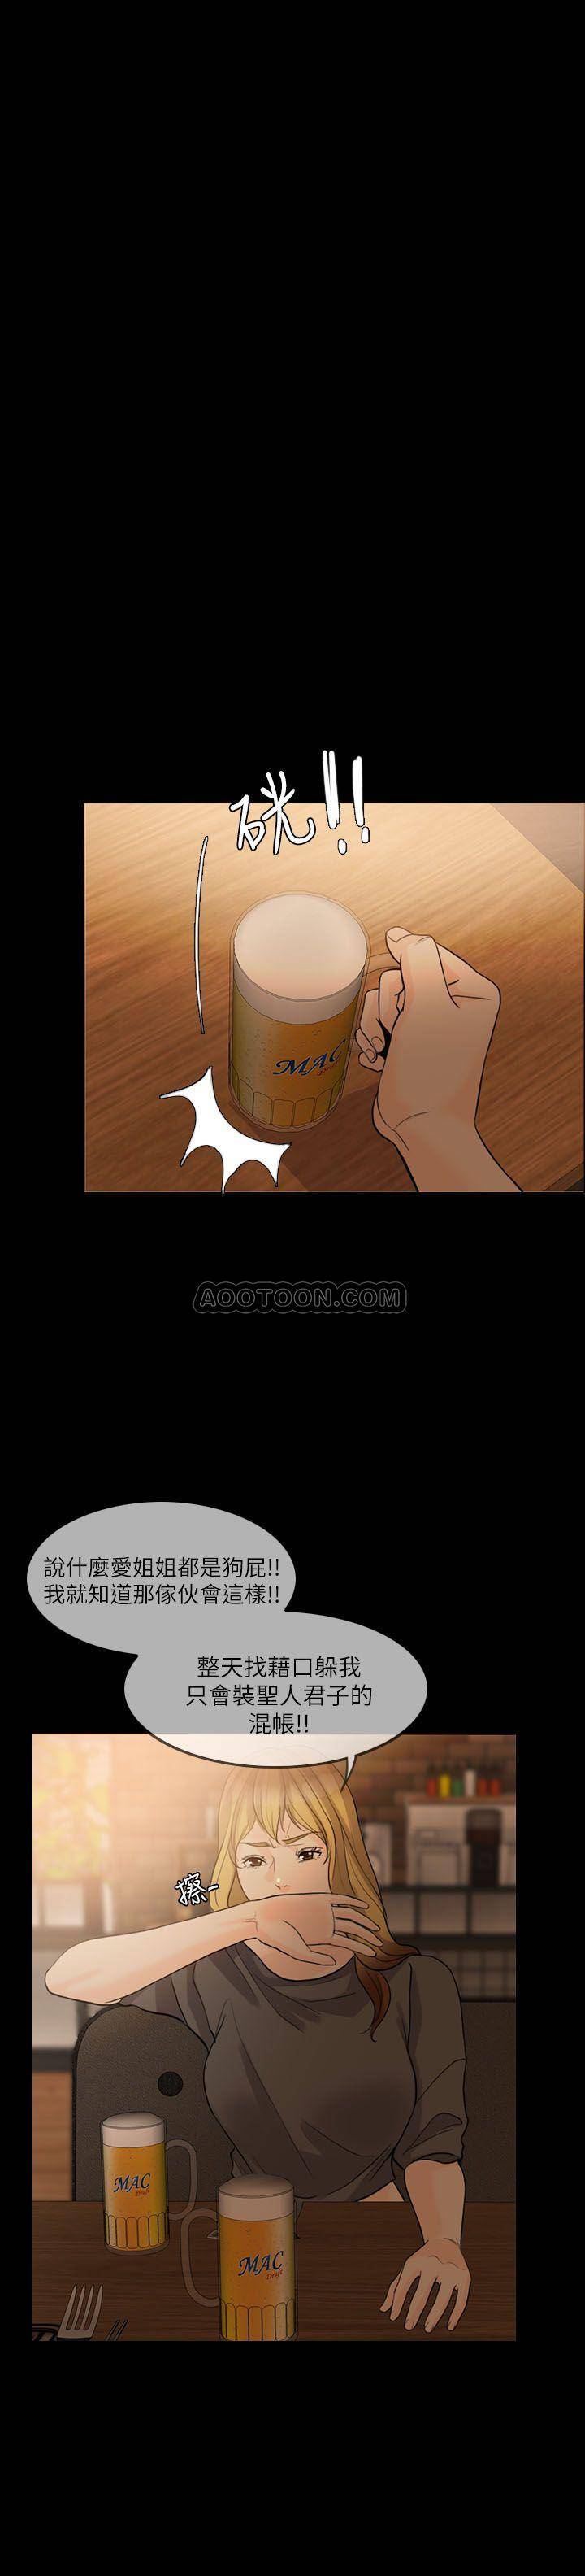 韩国污漫画 失控的愛 第16话 20